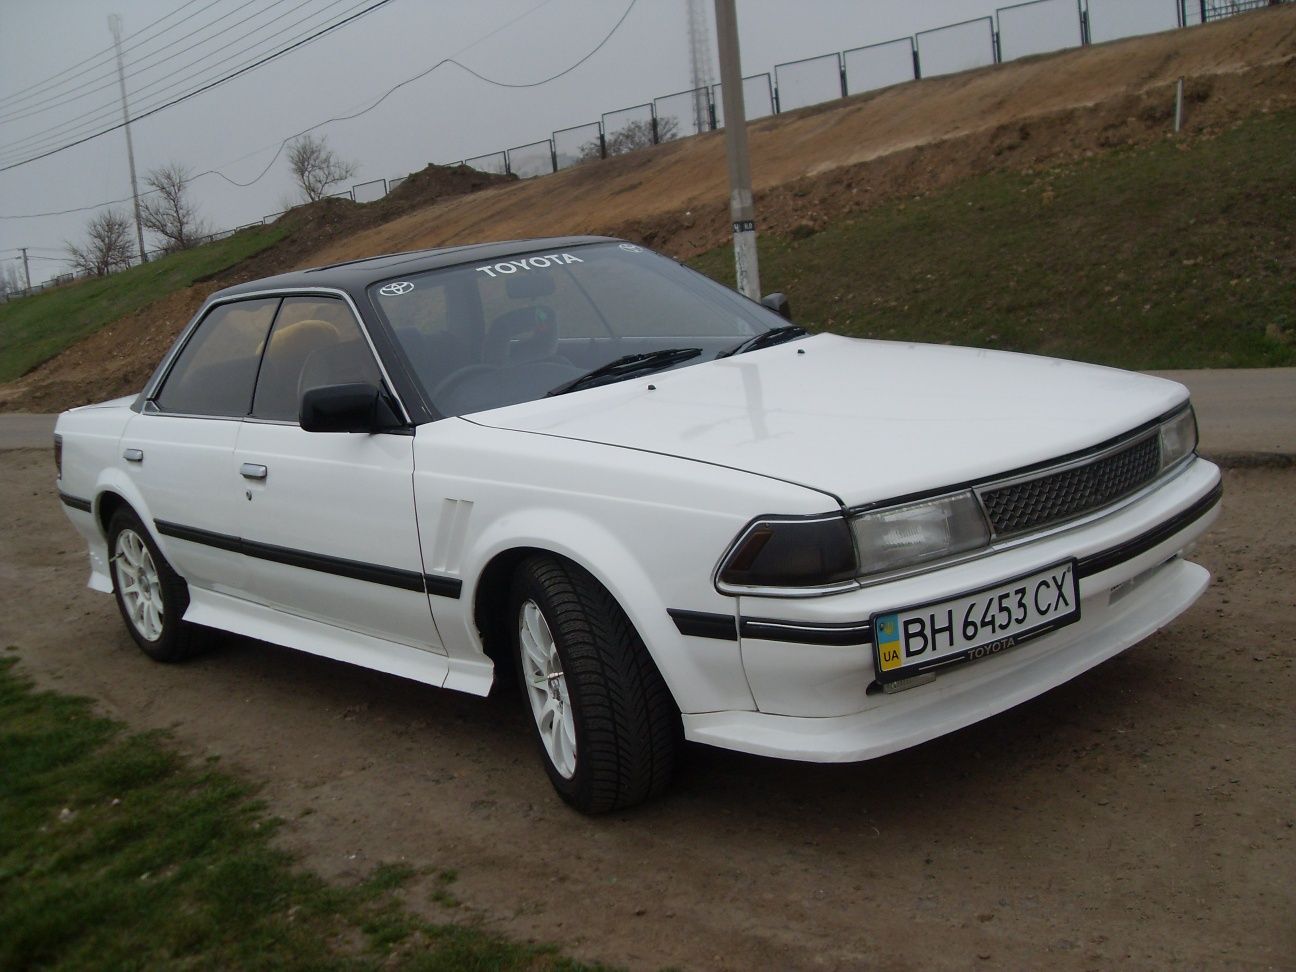 Продам Toyota Carina ED, 1.8, АКПП, 1990 г, в очень хорошем состоянии!